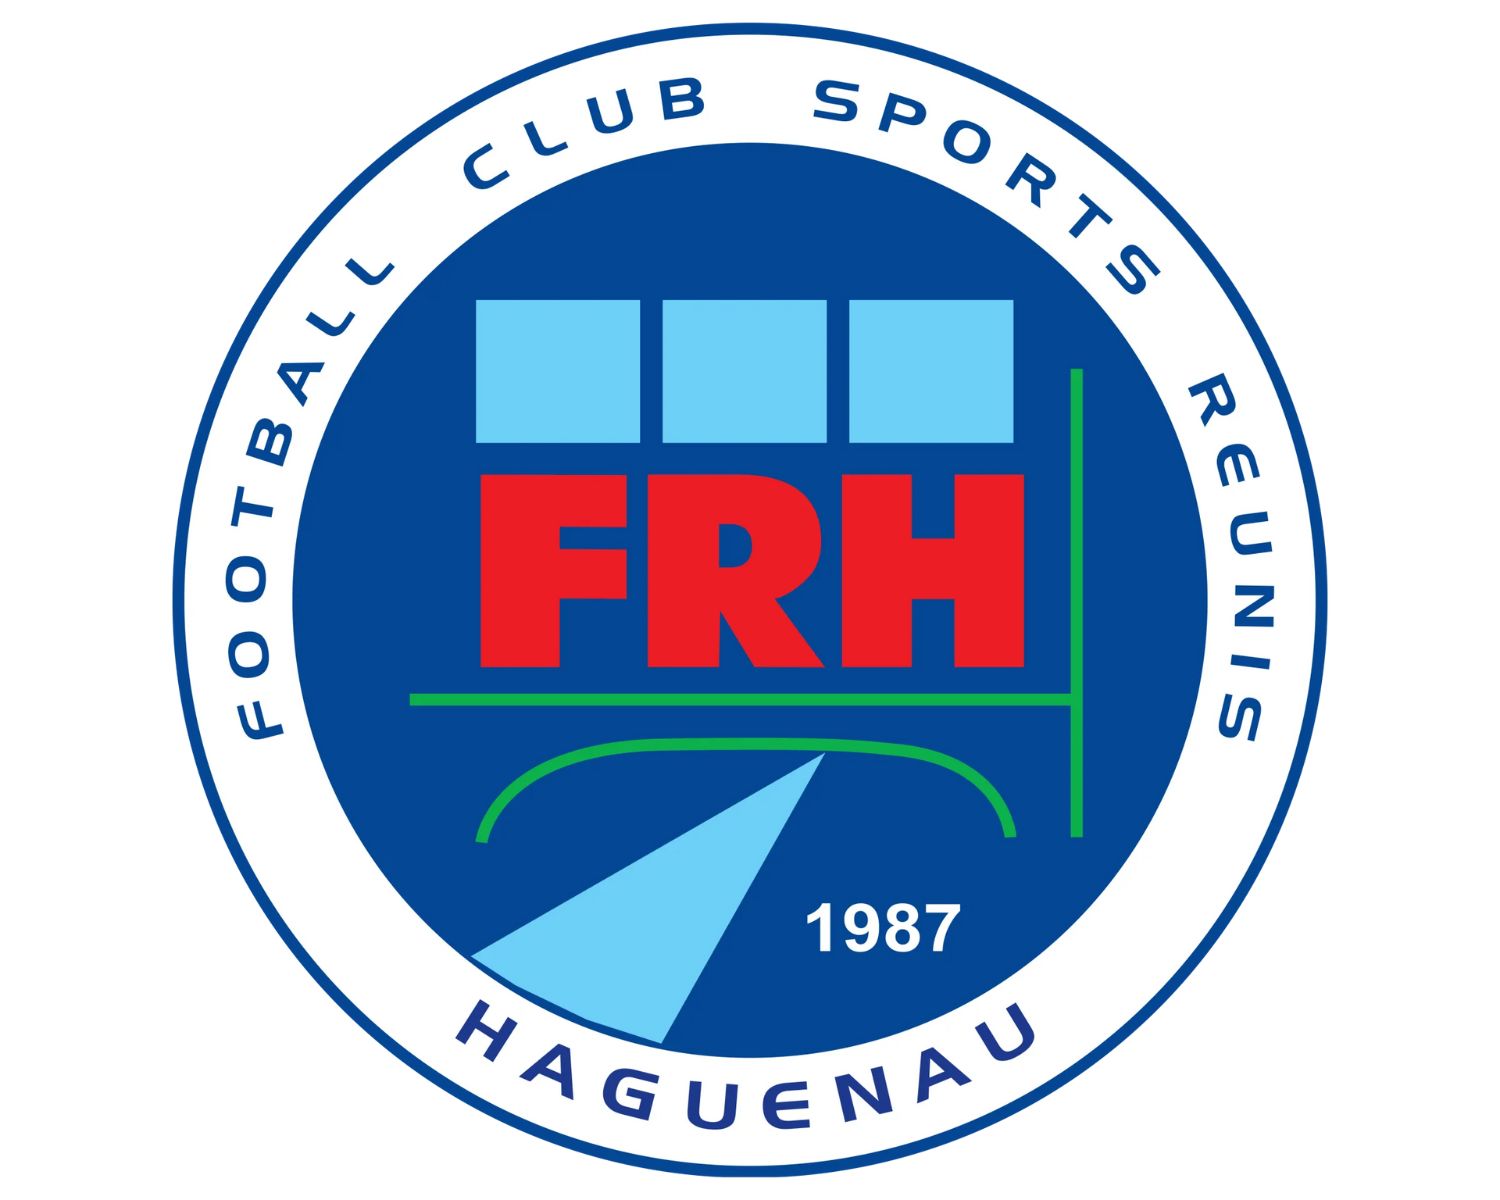 fcsr-haguenau-14-football-club-facts